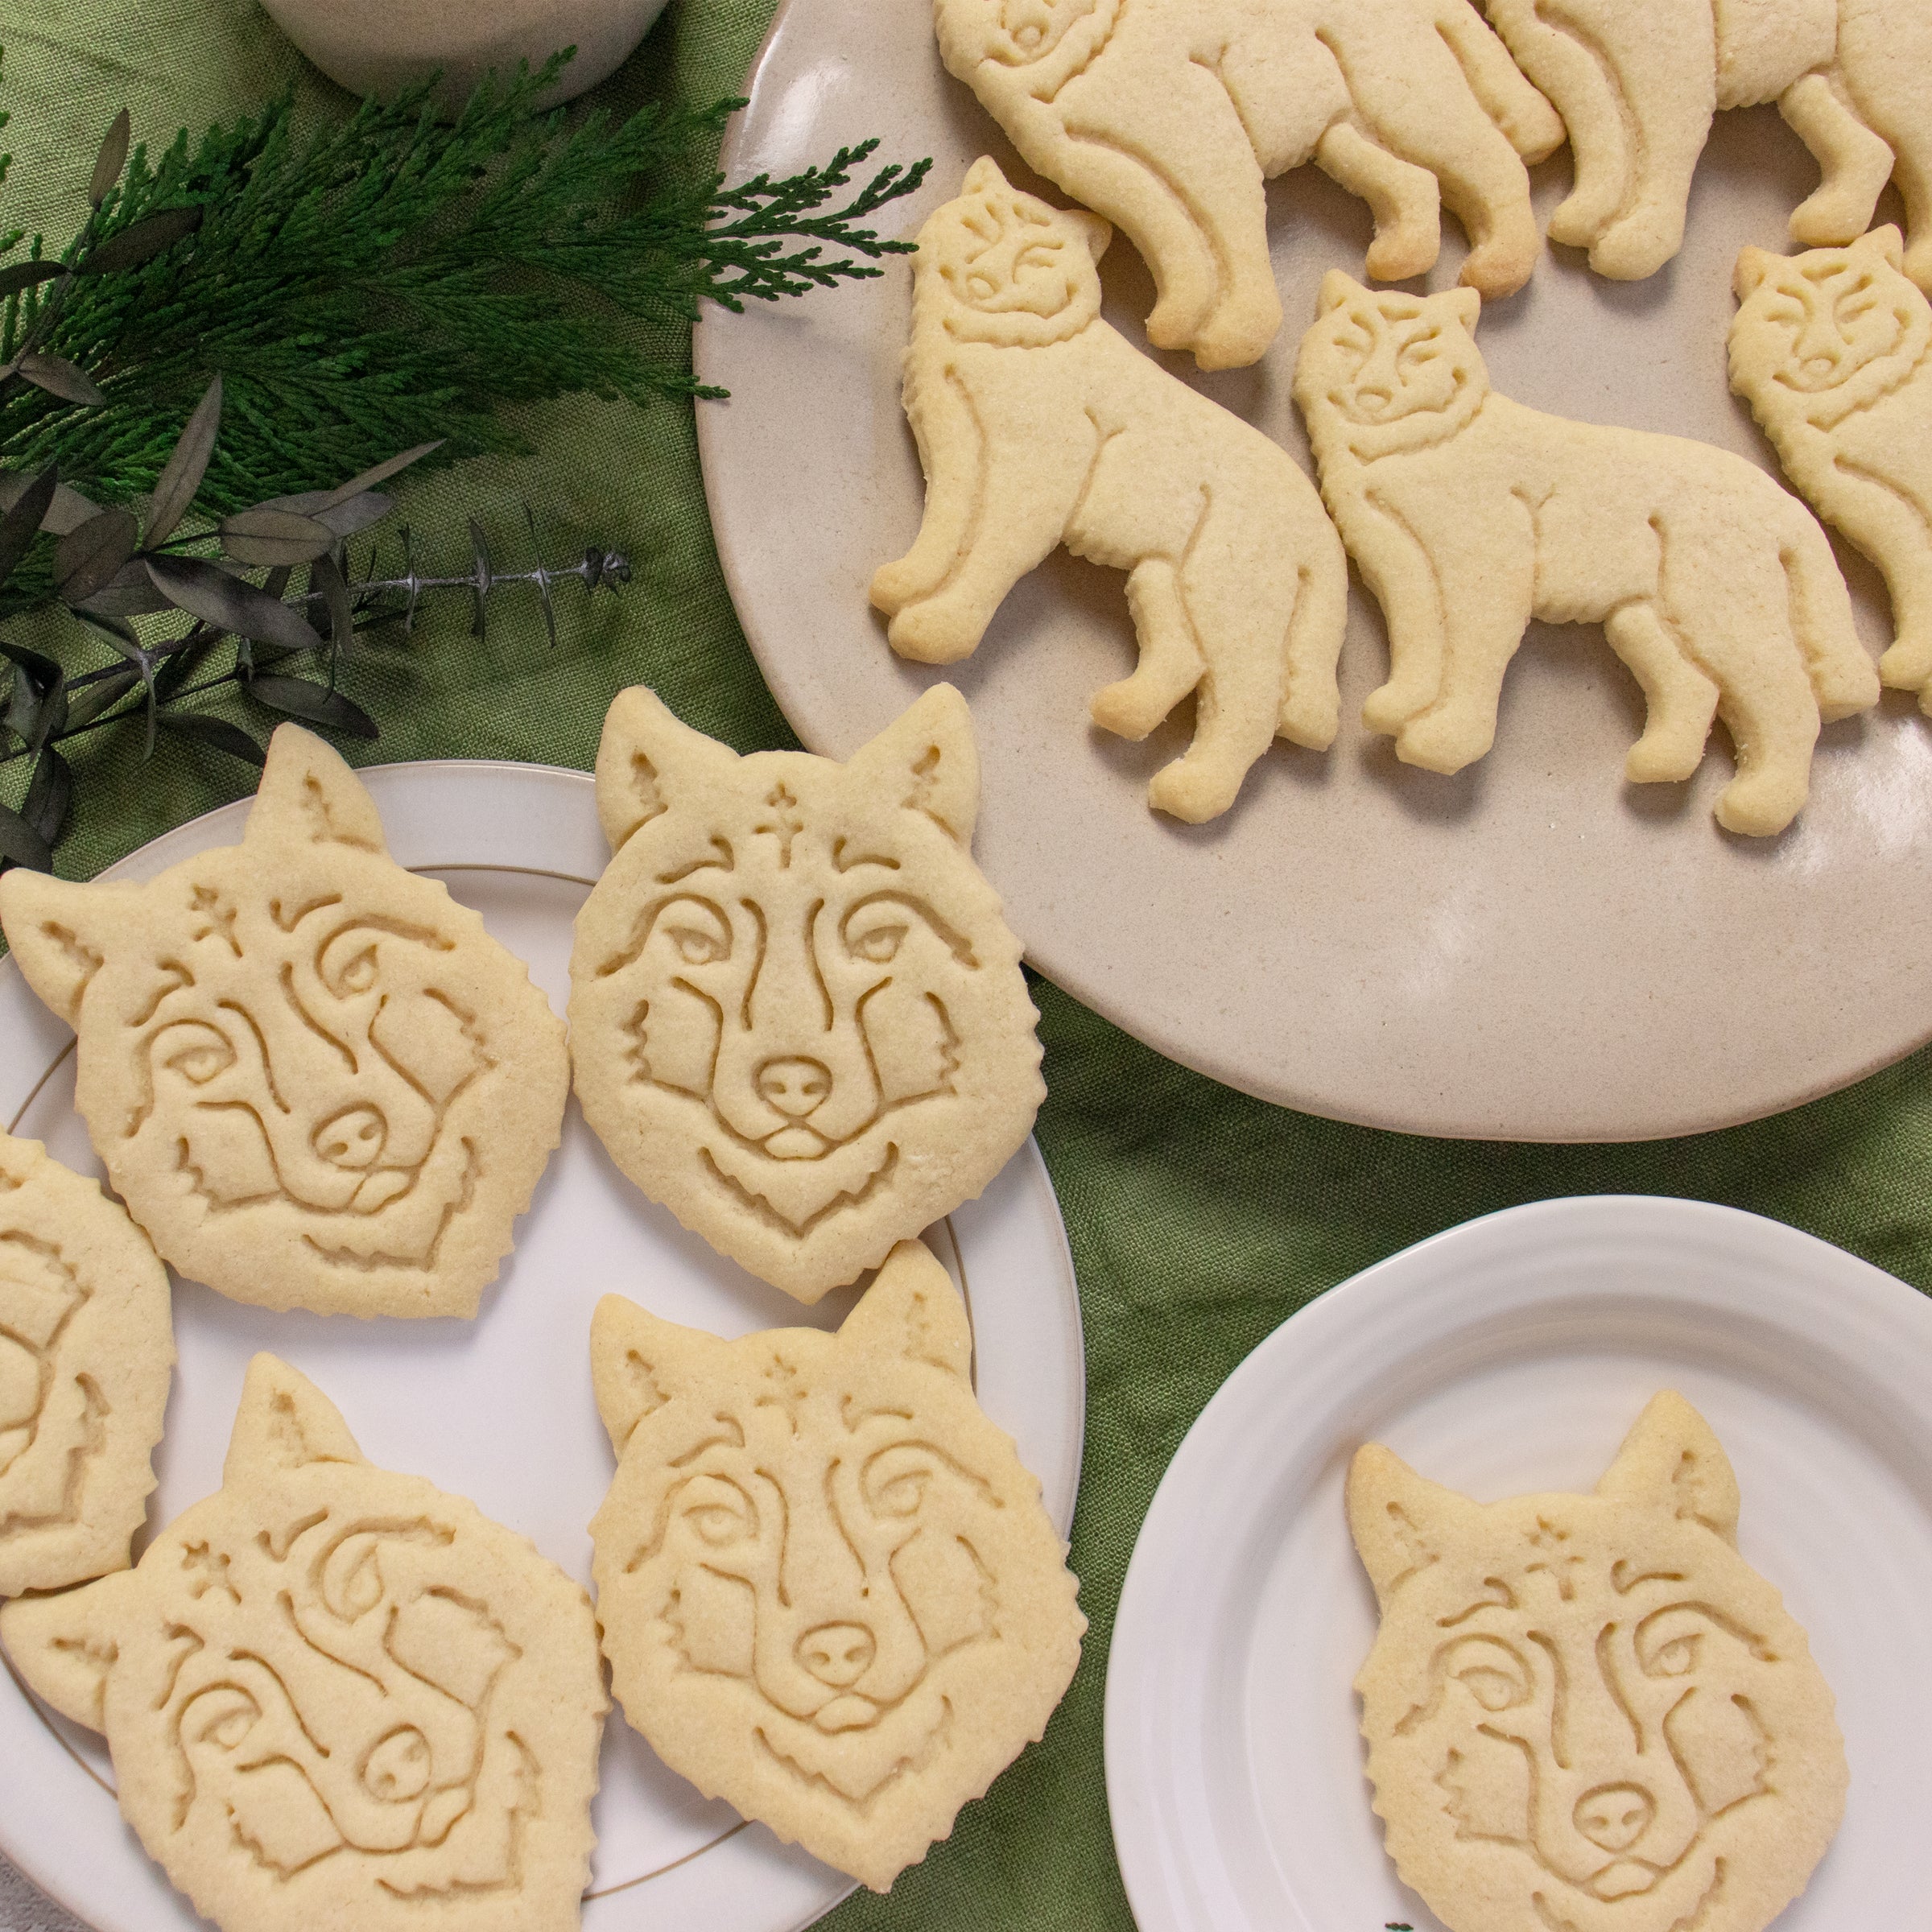 wolf cookies